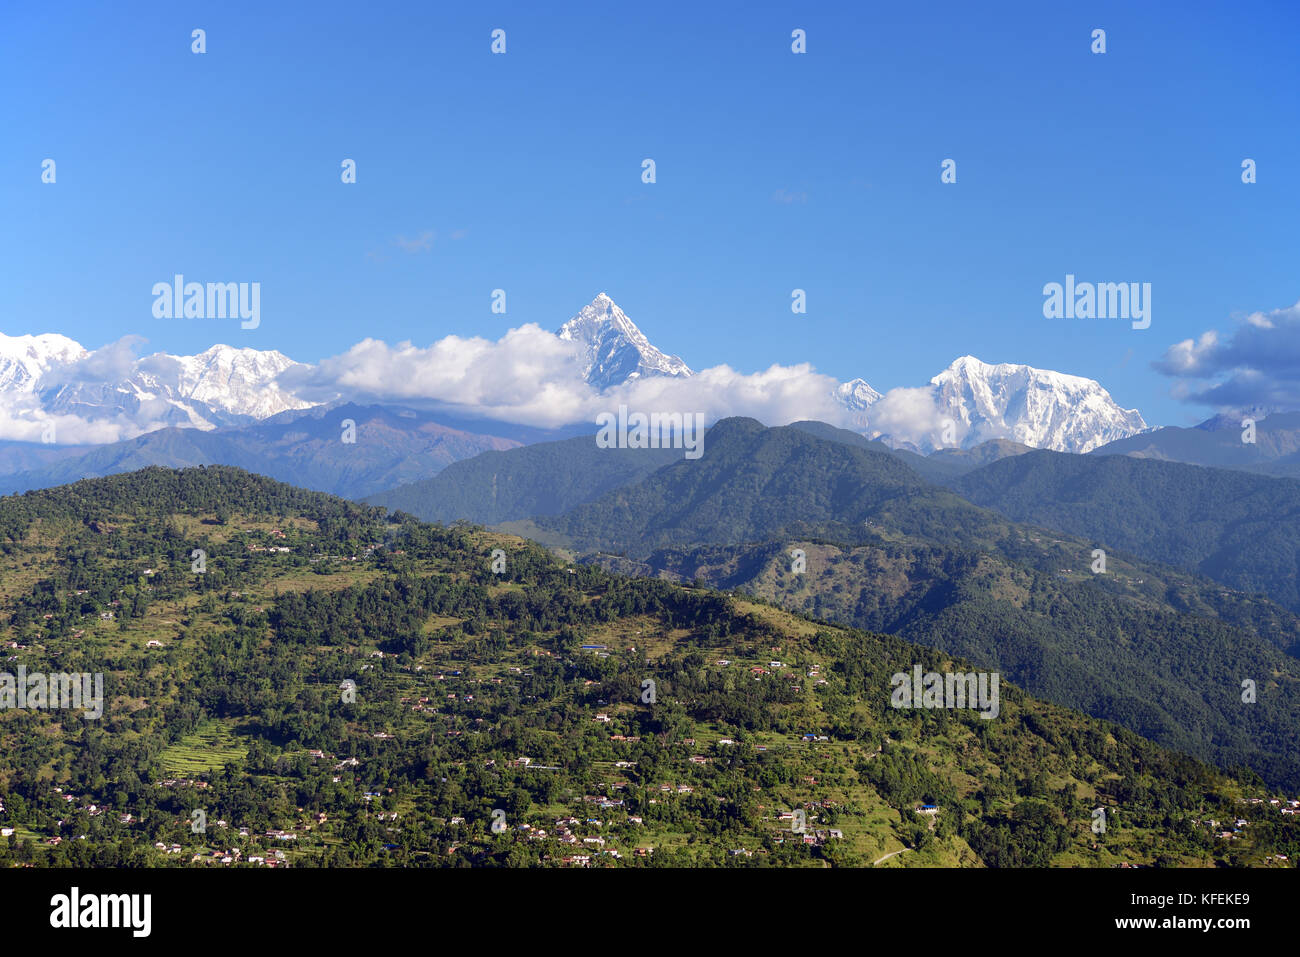 Machapuchare, una montagna nella catena Hannapurna dell'Himalaya, è considerato sacro per la religione indù in modo arrampicata è severamente vietato. Foto Stock